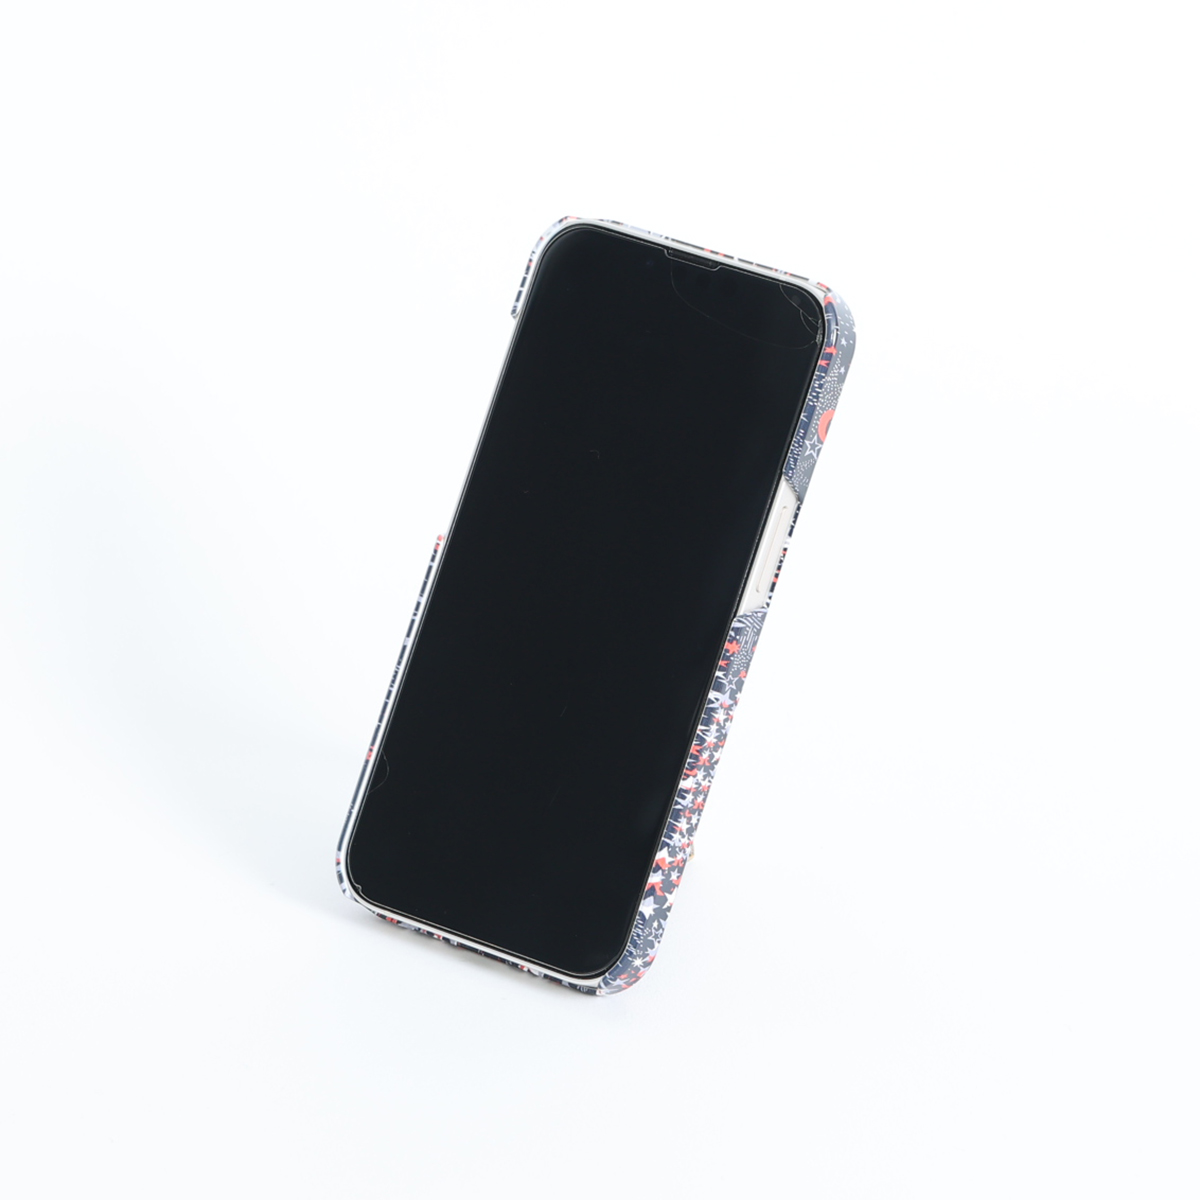 11月下旬お届け予定ご受注商品『Sincere』 iphone hard case画像